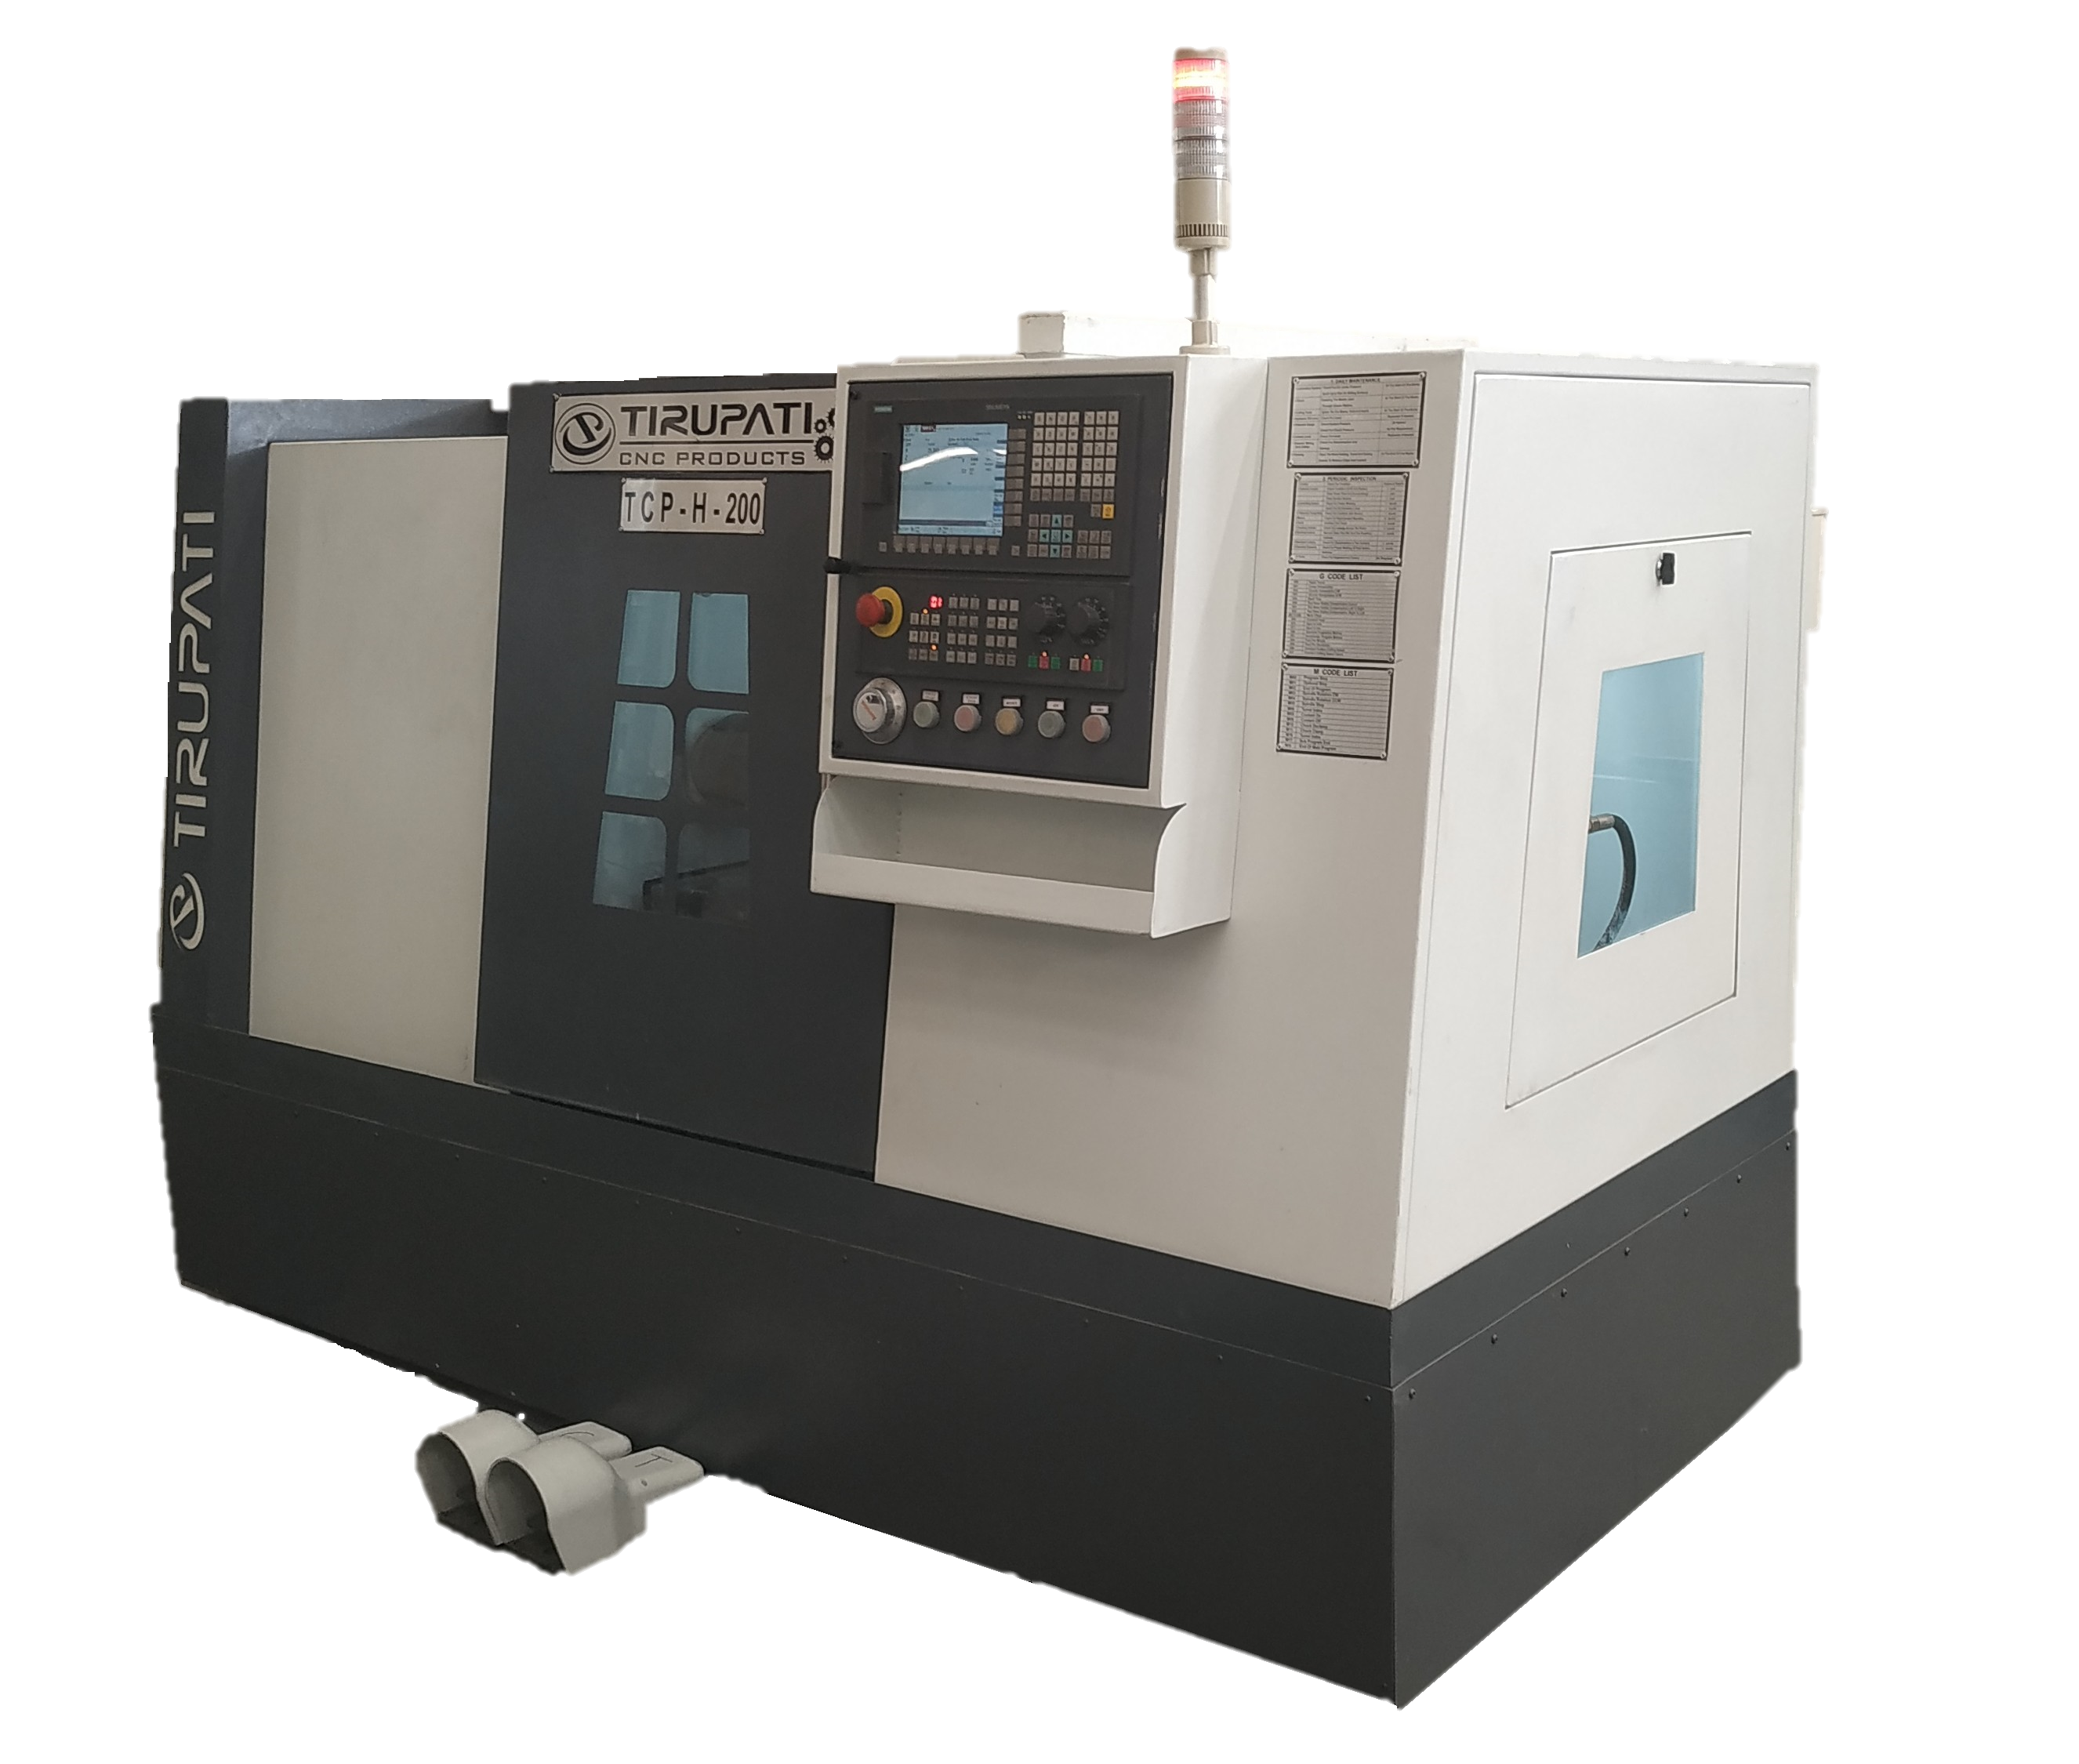 TCP-H-200L CNC Lathe Machine